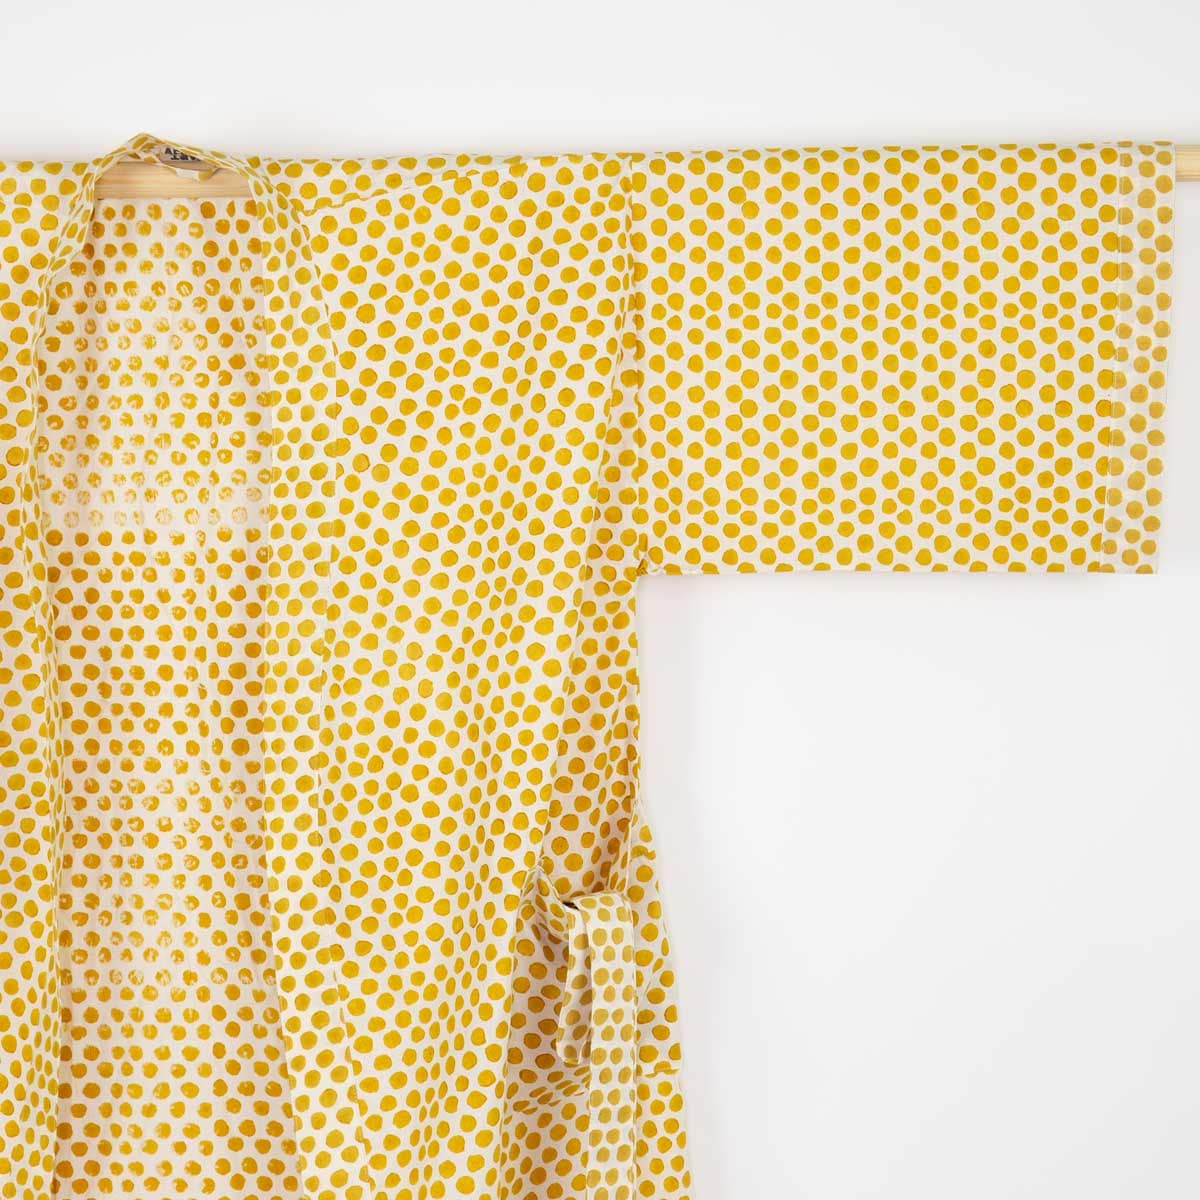 SPOT ON Kimono One size, yellow/white